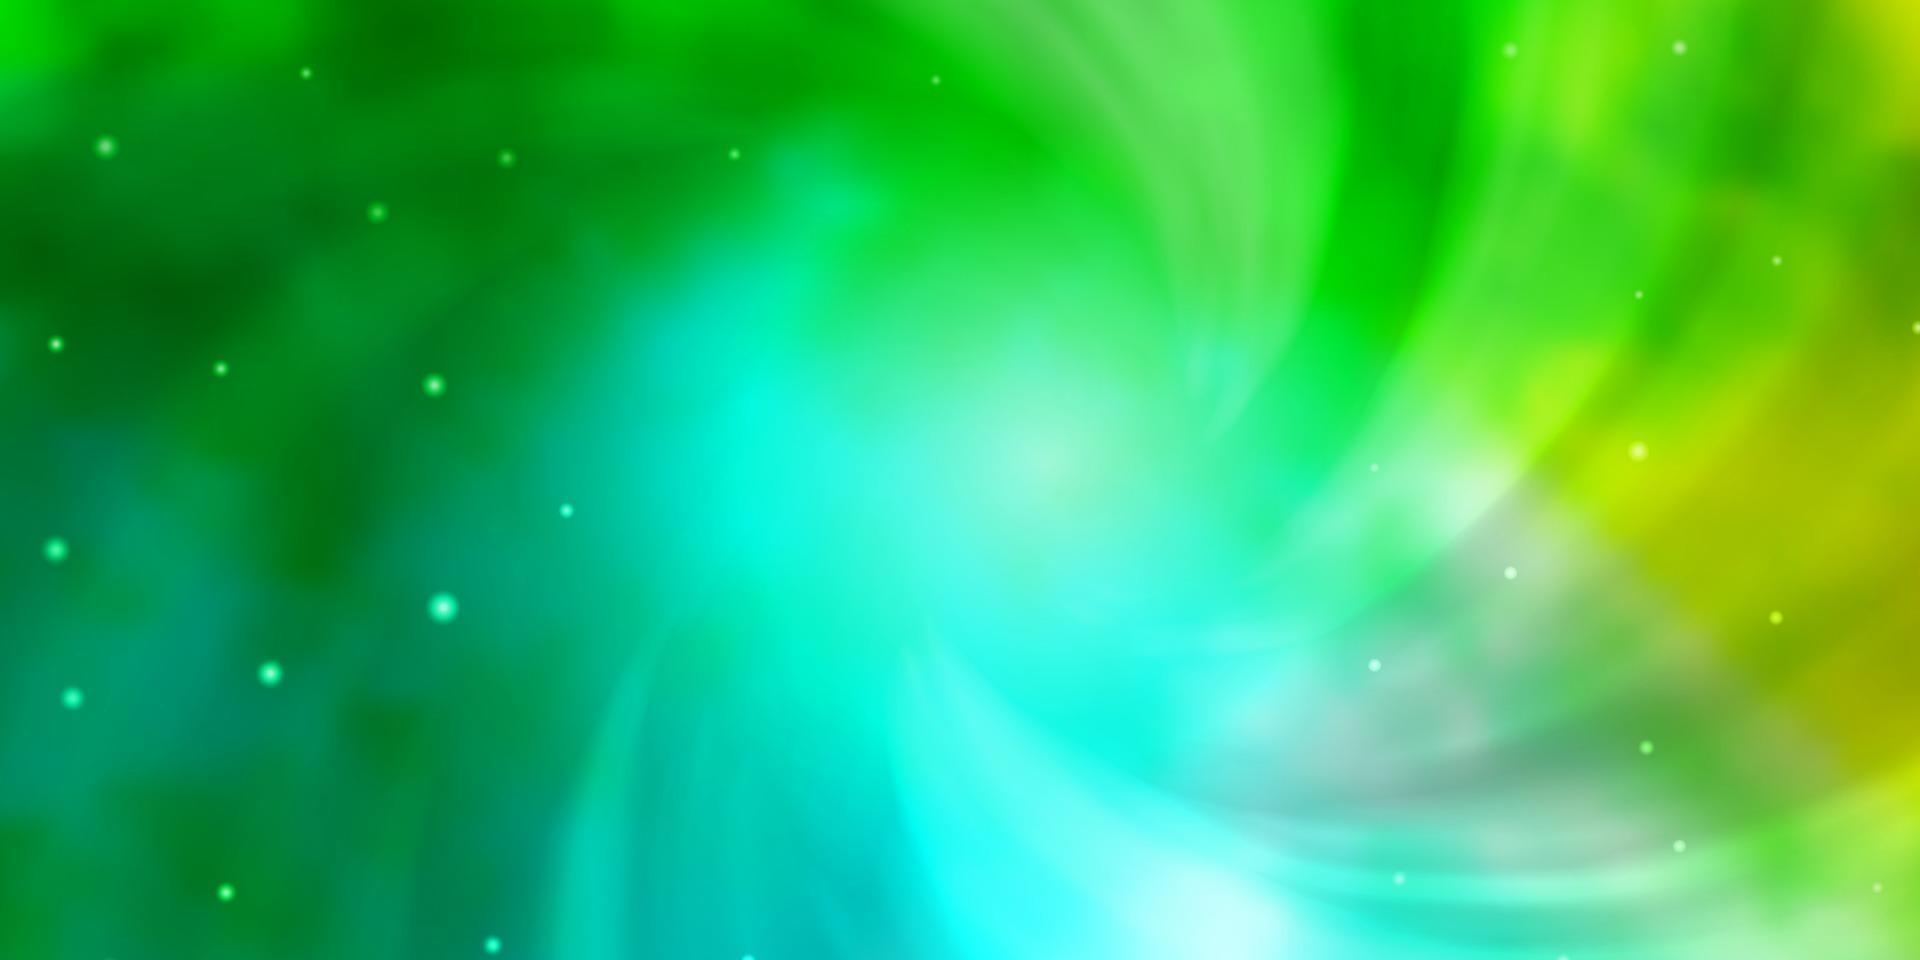 hellblaue, grüne Vektorschablone mit Neonsternen. vektor